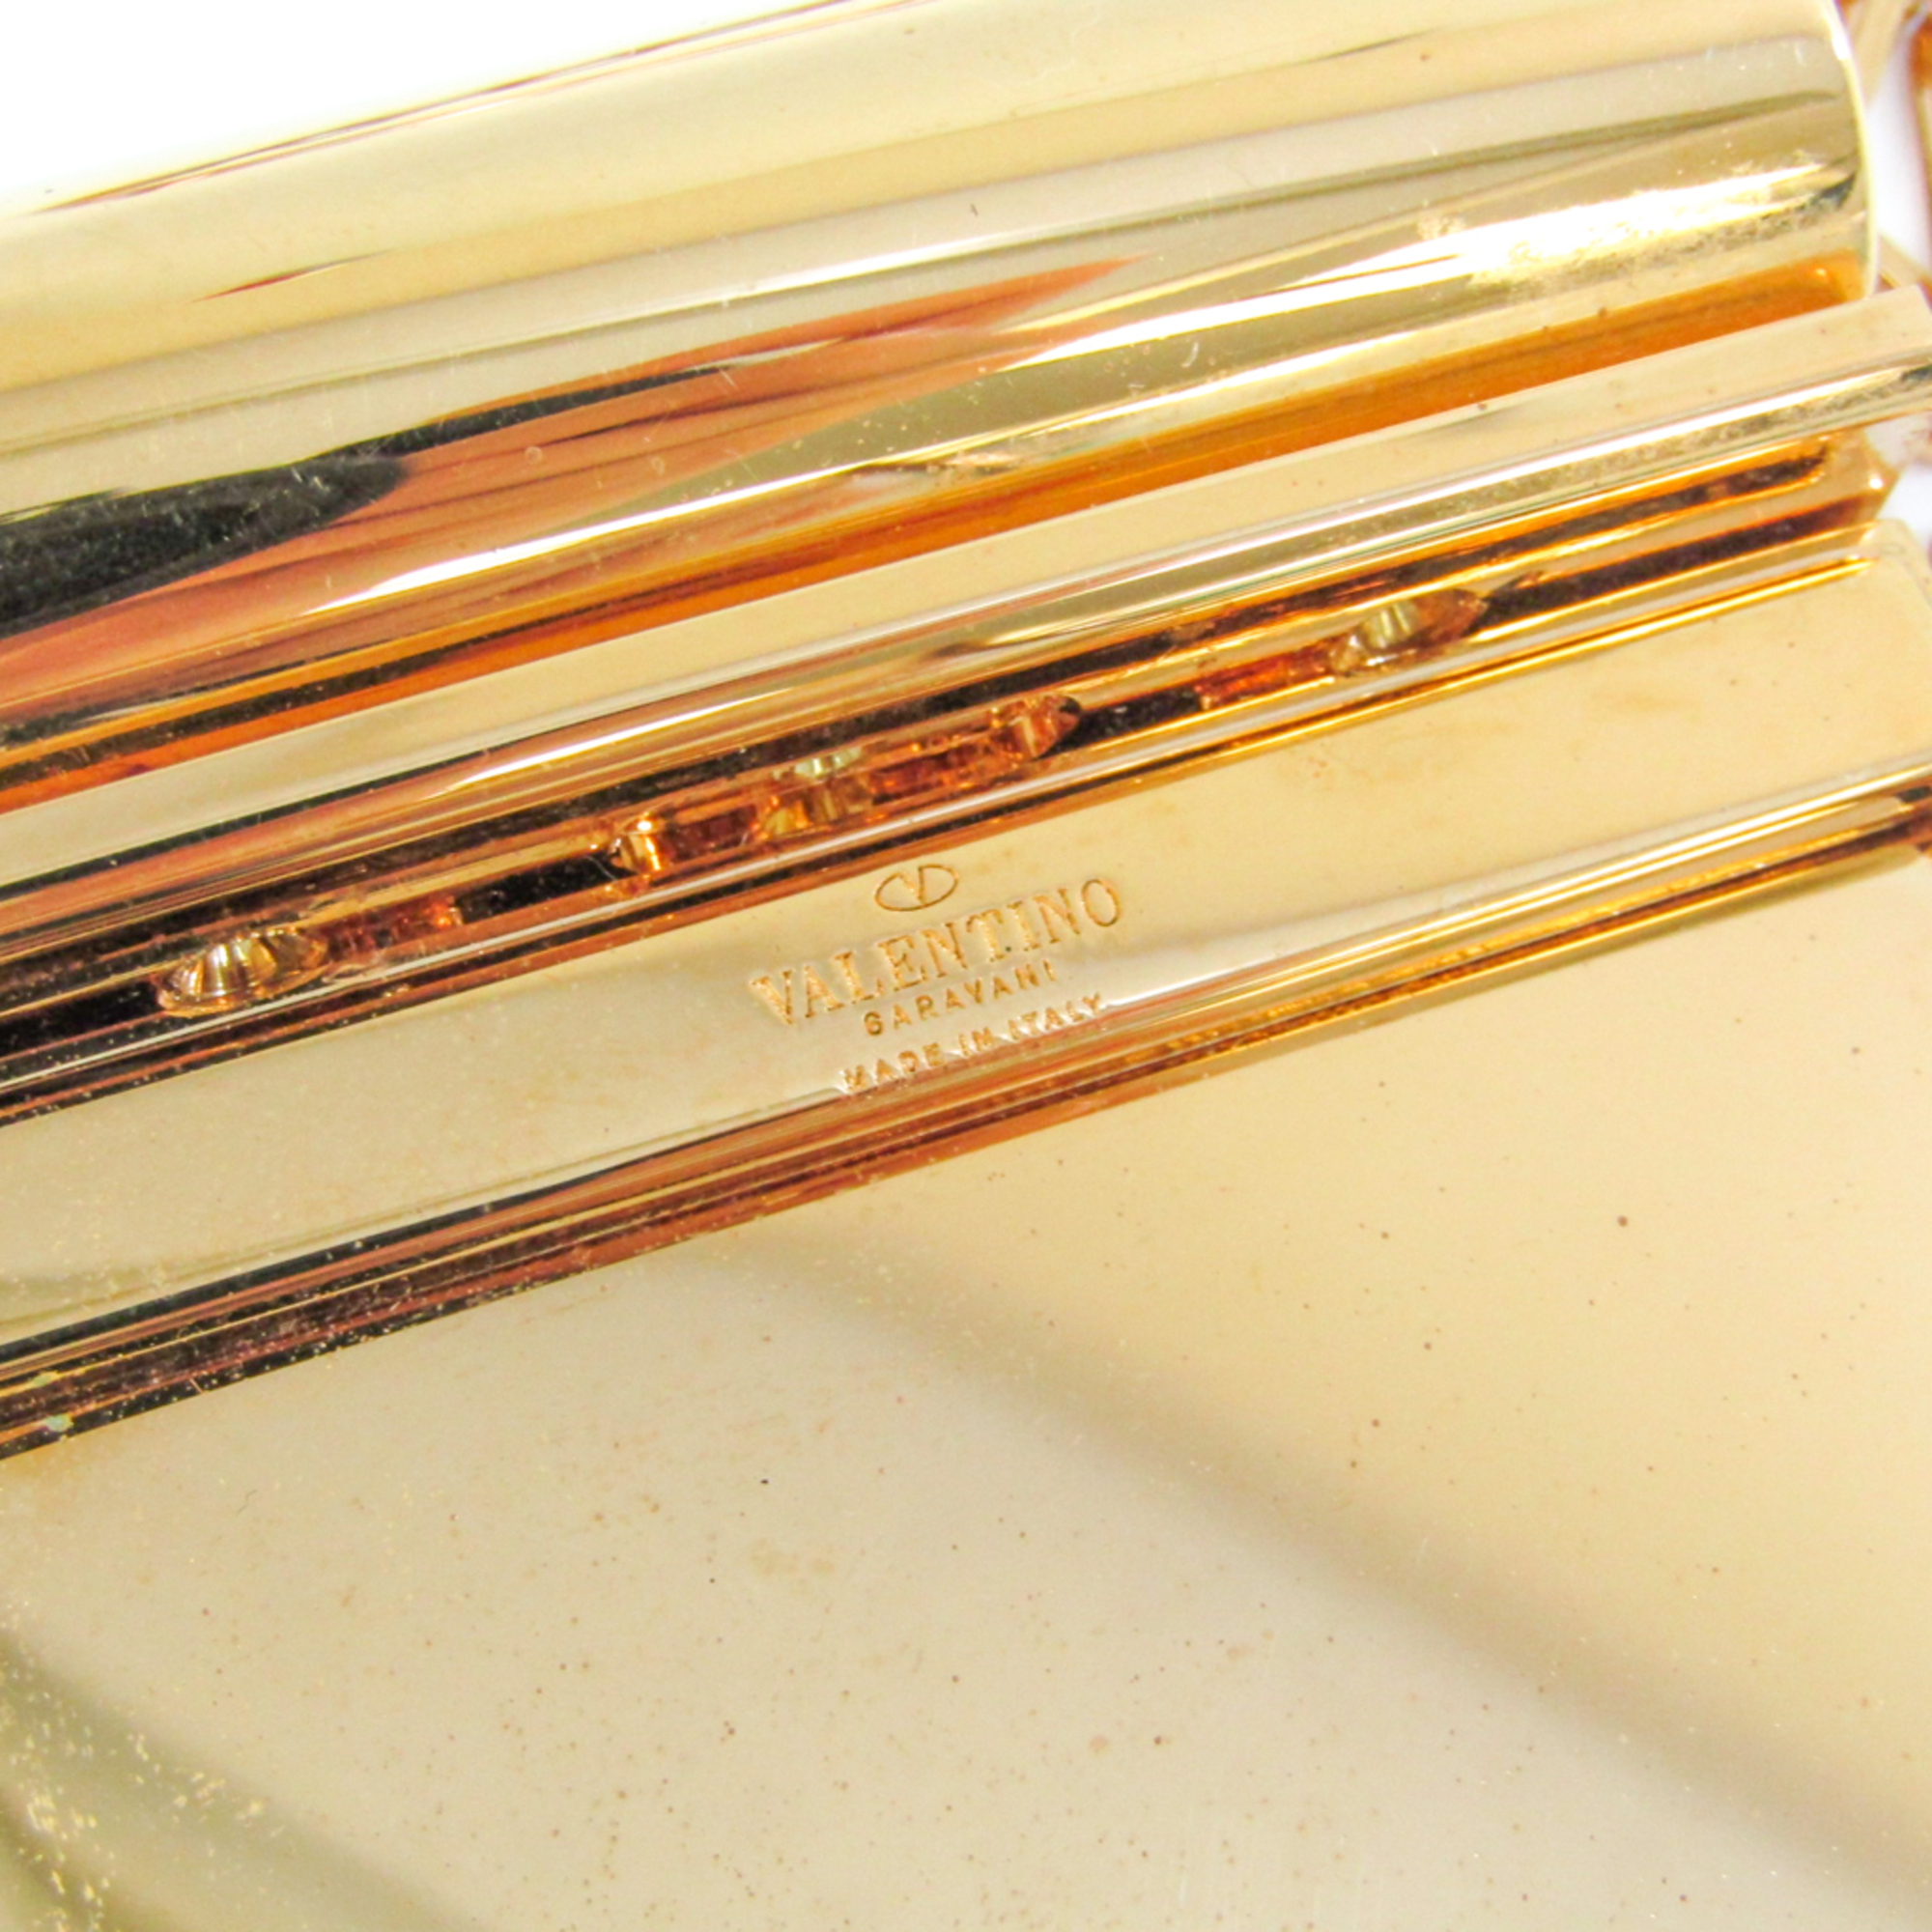 Valentino Metal Lipstick Case Gold,Pink love blade mirror lipstick